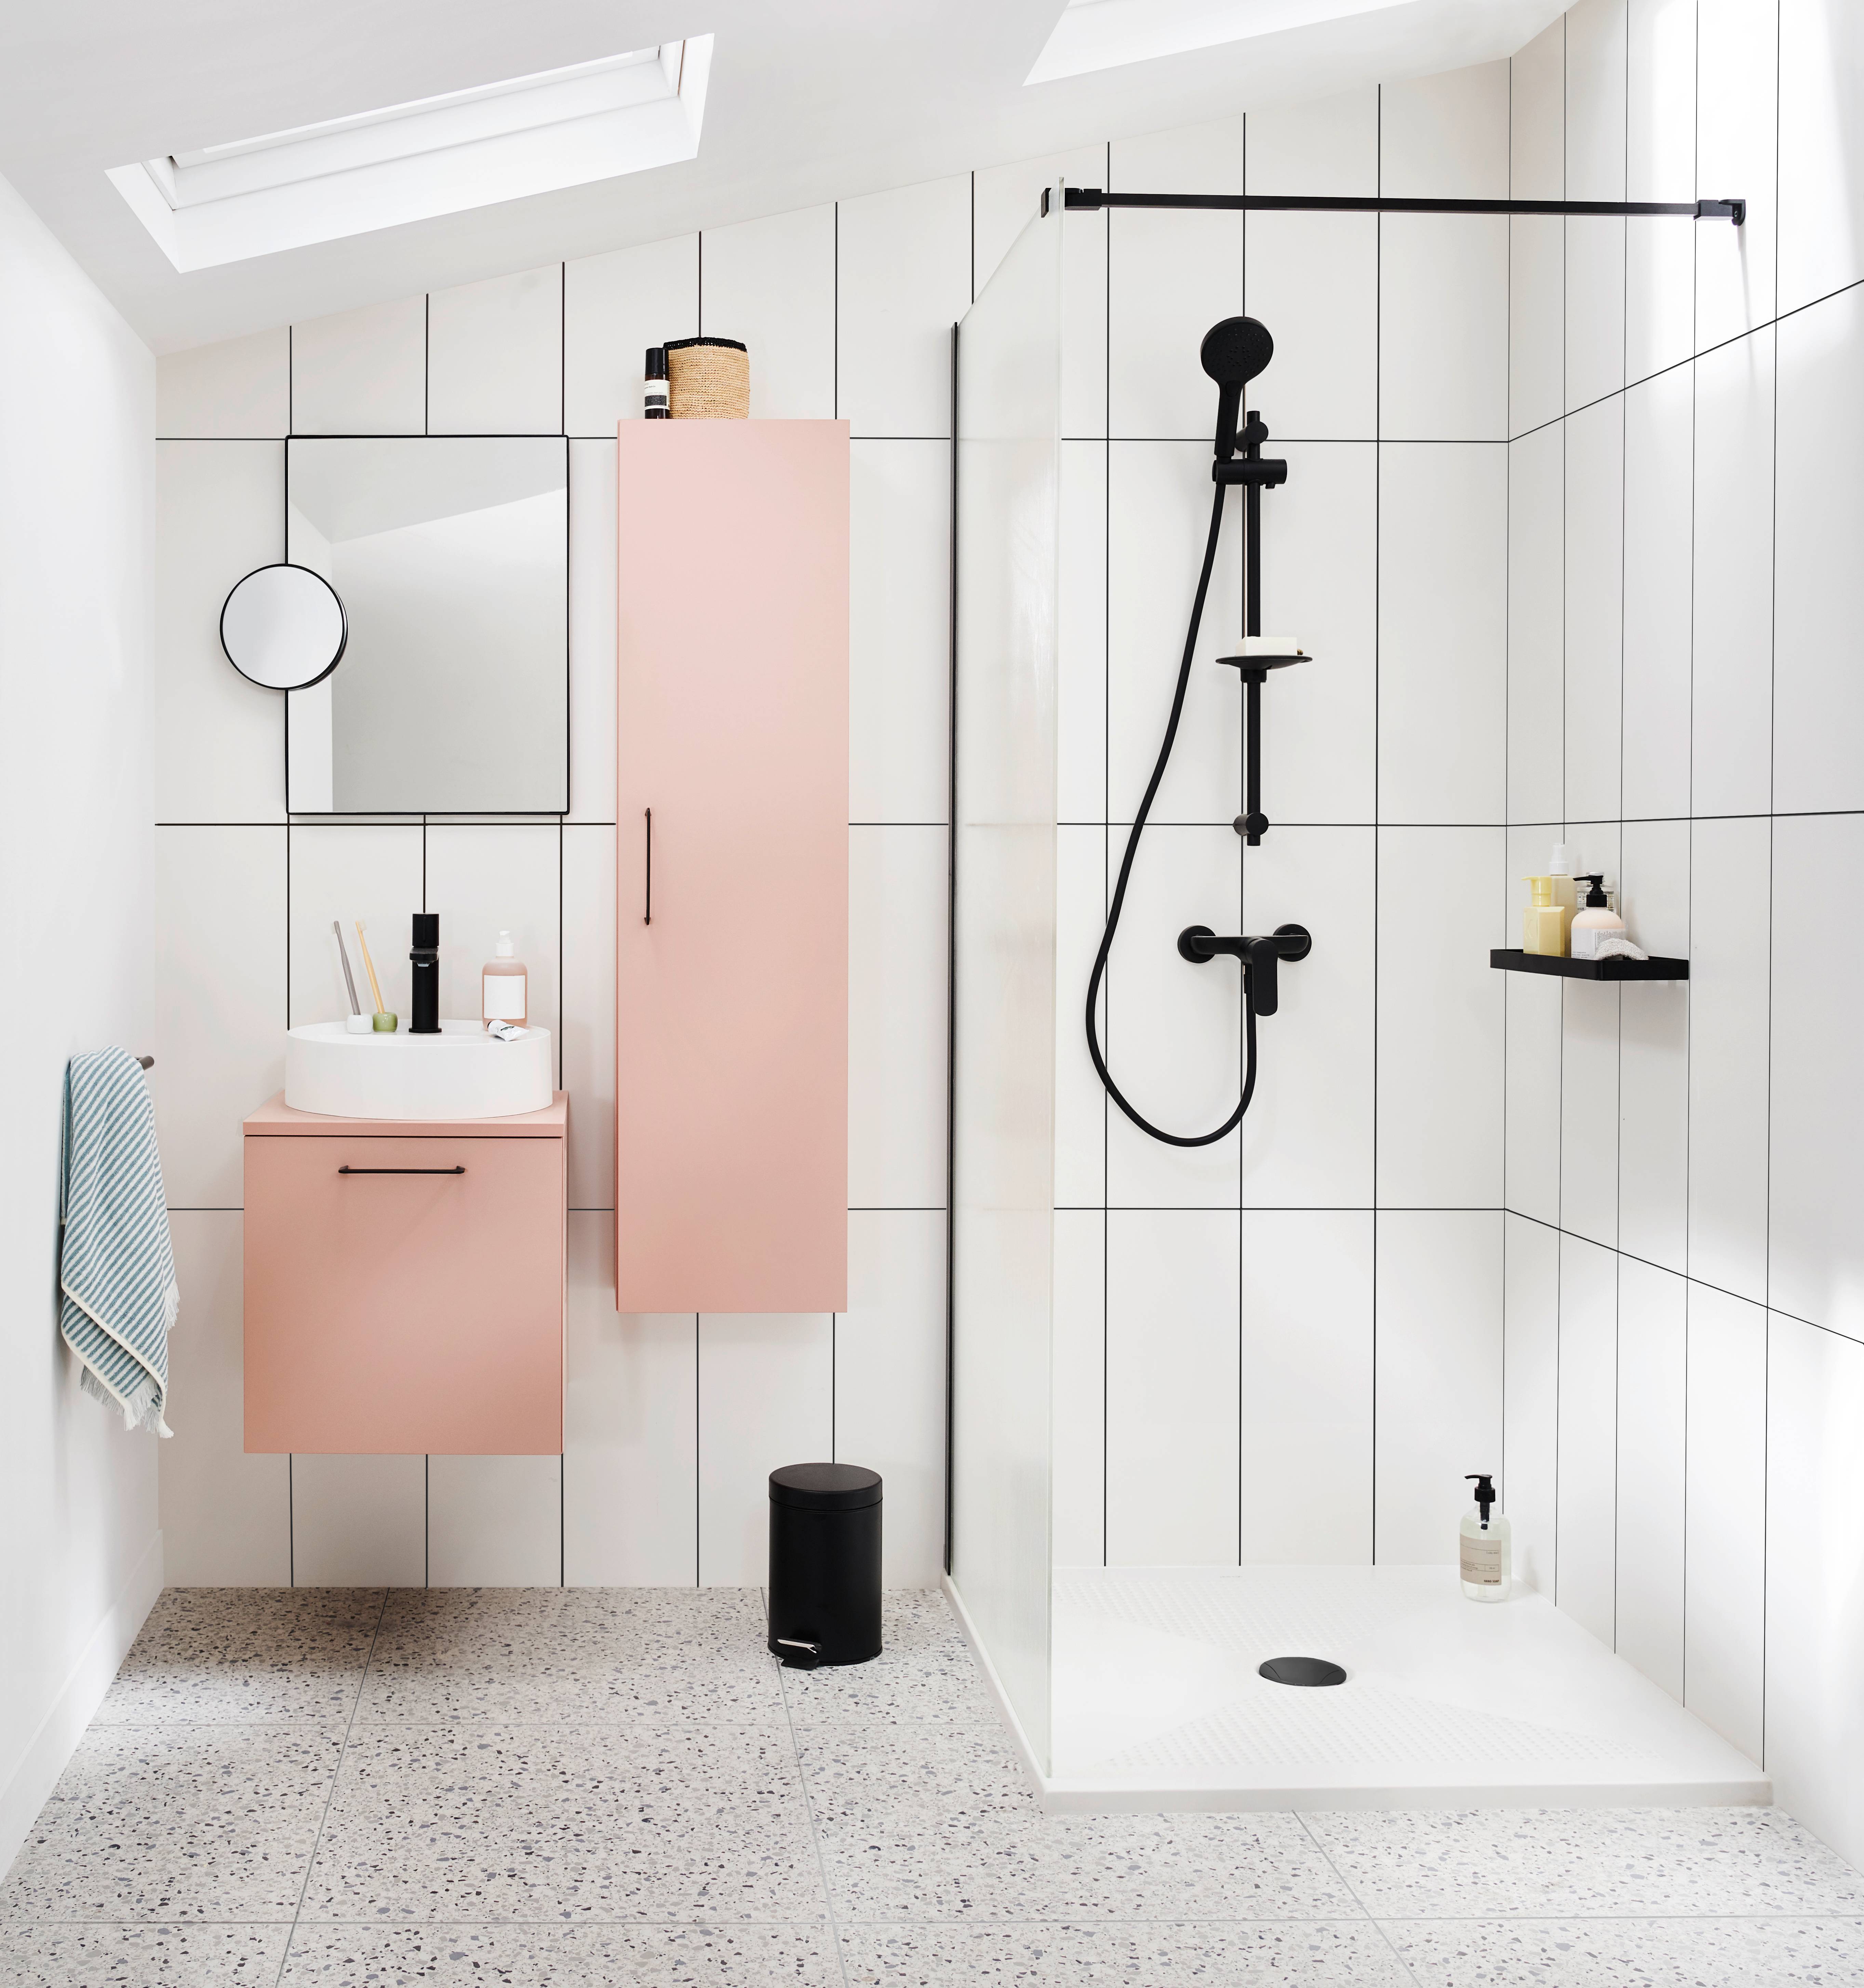 Épurée, minimaliste mais agréable et fonctionnelle, la salle de bains 2021 offre un espace de détente où il fait bon prendre soin de soi et ce quelle que soit sa surface. © Lapeyre